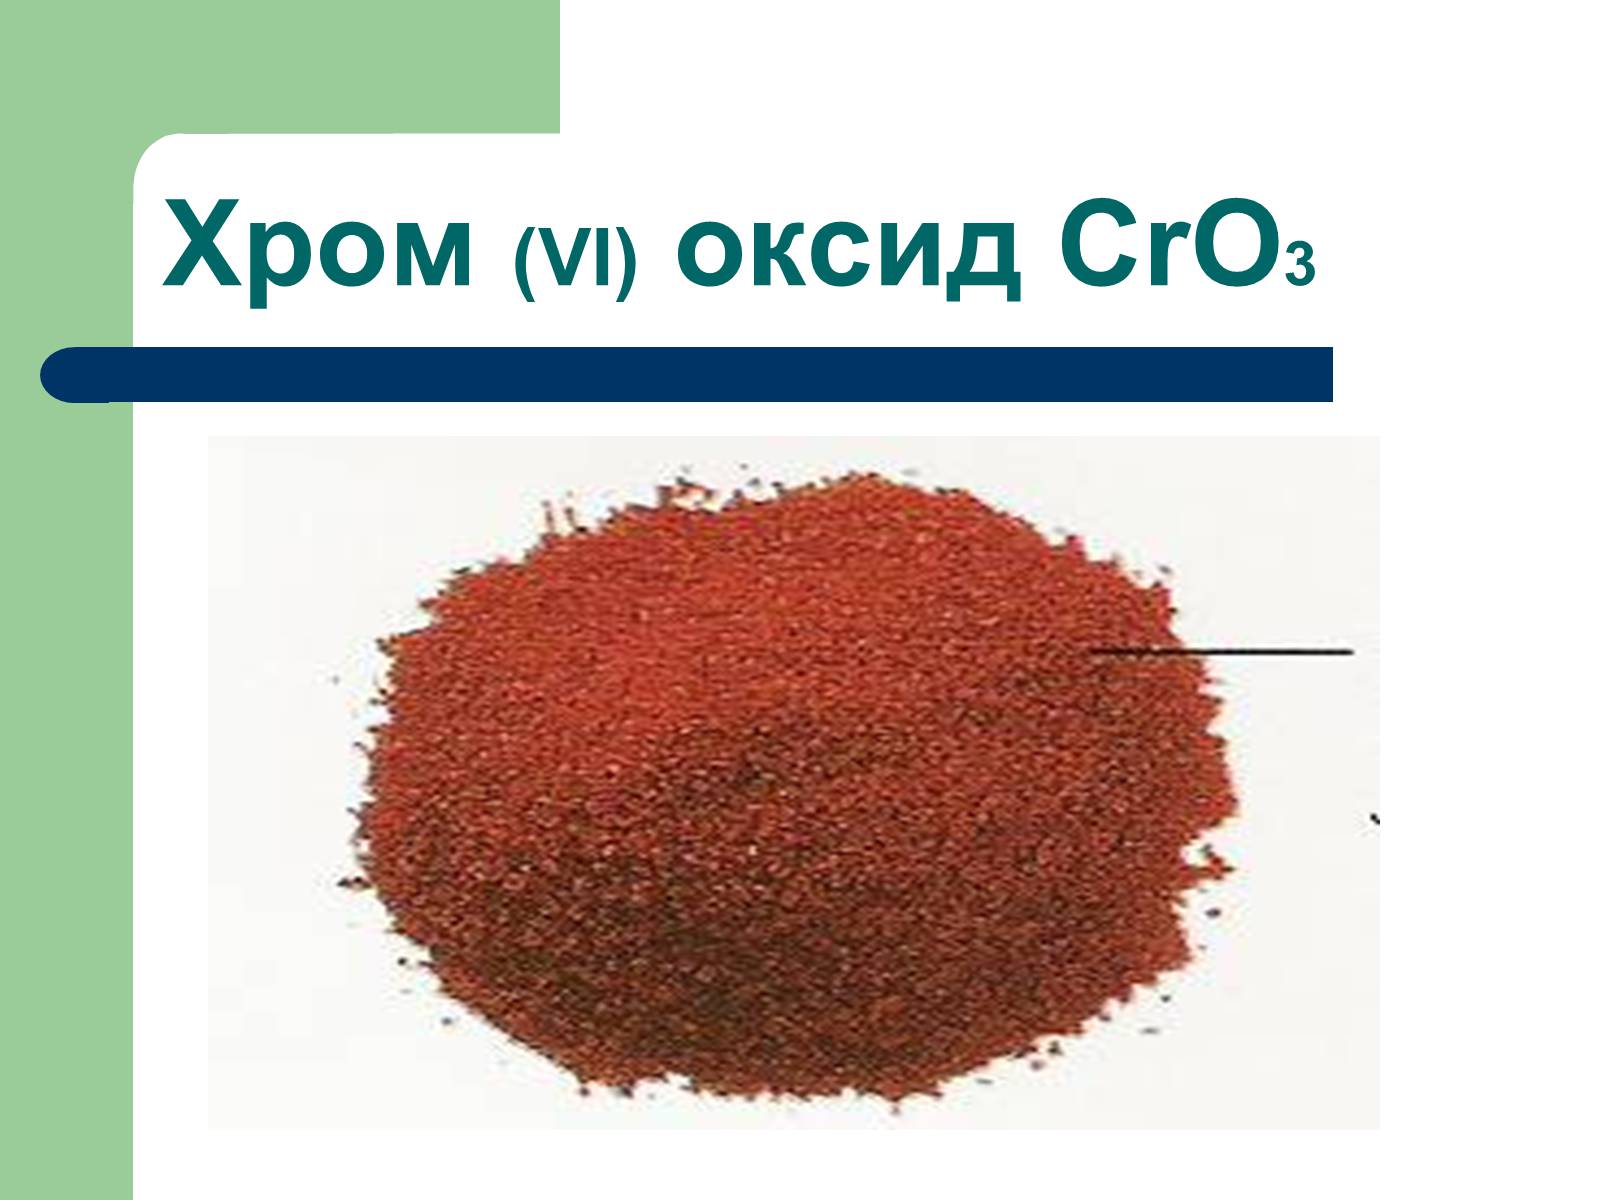 Оксид хрома проявляет. Оксид хрома cro3. Оксид хрома 2. Оксид хрома 2 цвет. Оксид хрома цвет.